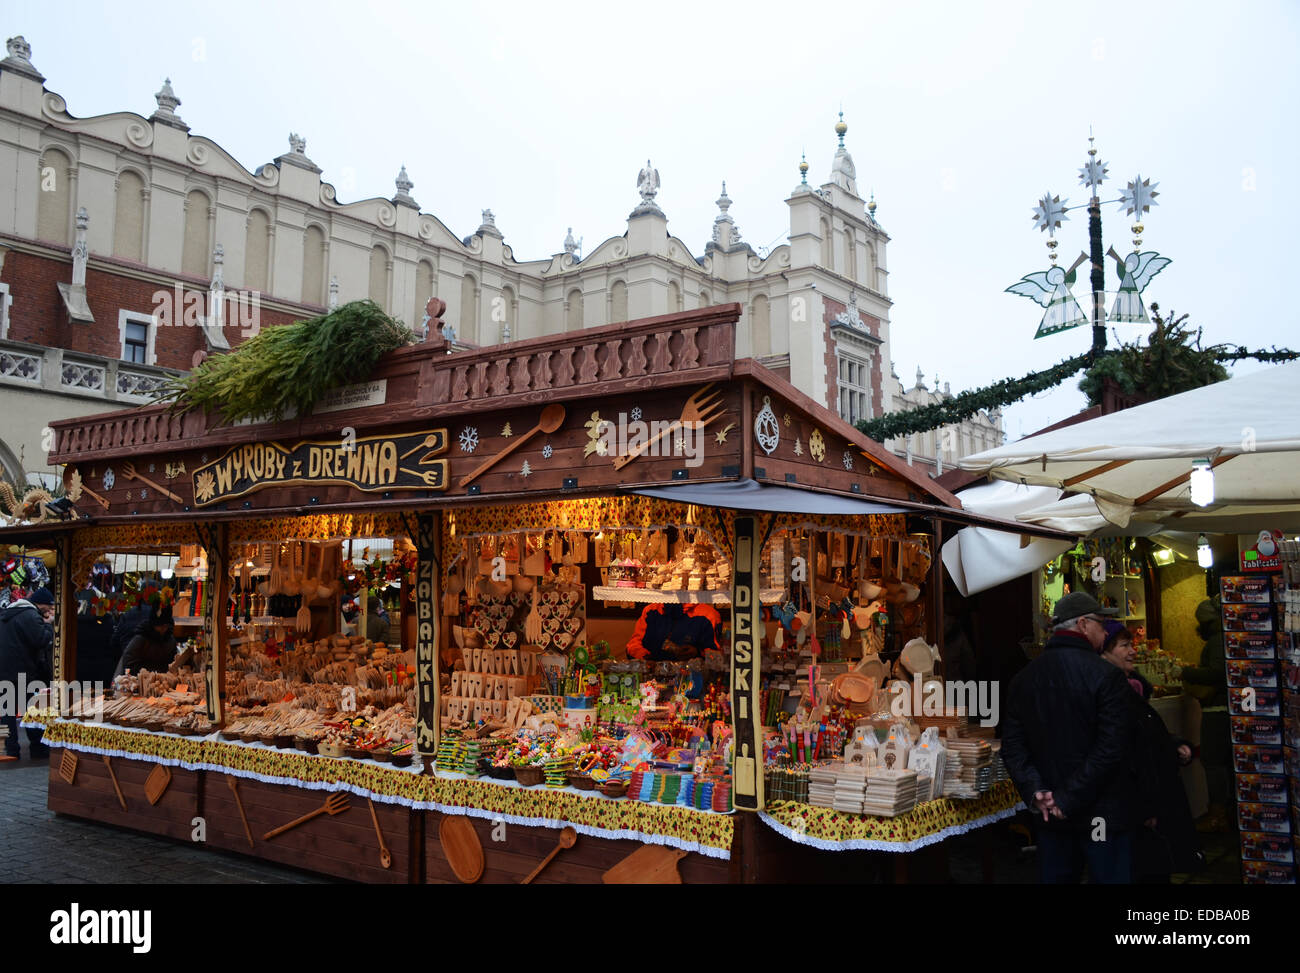 Stand de artesanía local en el mercado de Navidad en tela histórico edificio del mercado, Cracovia, Polonia Foto de stock